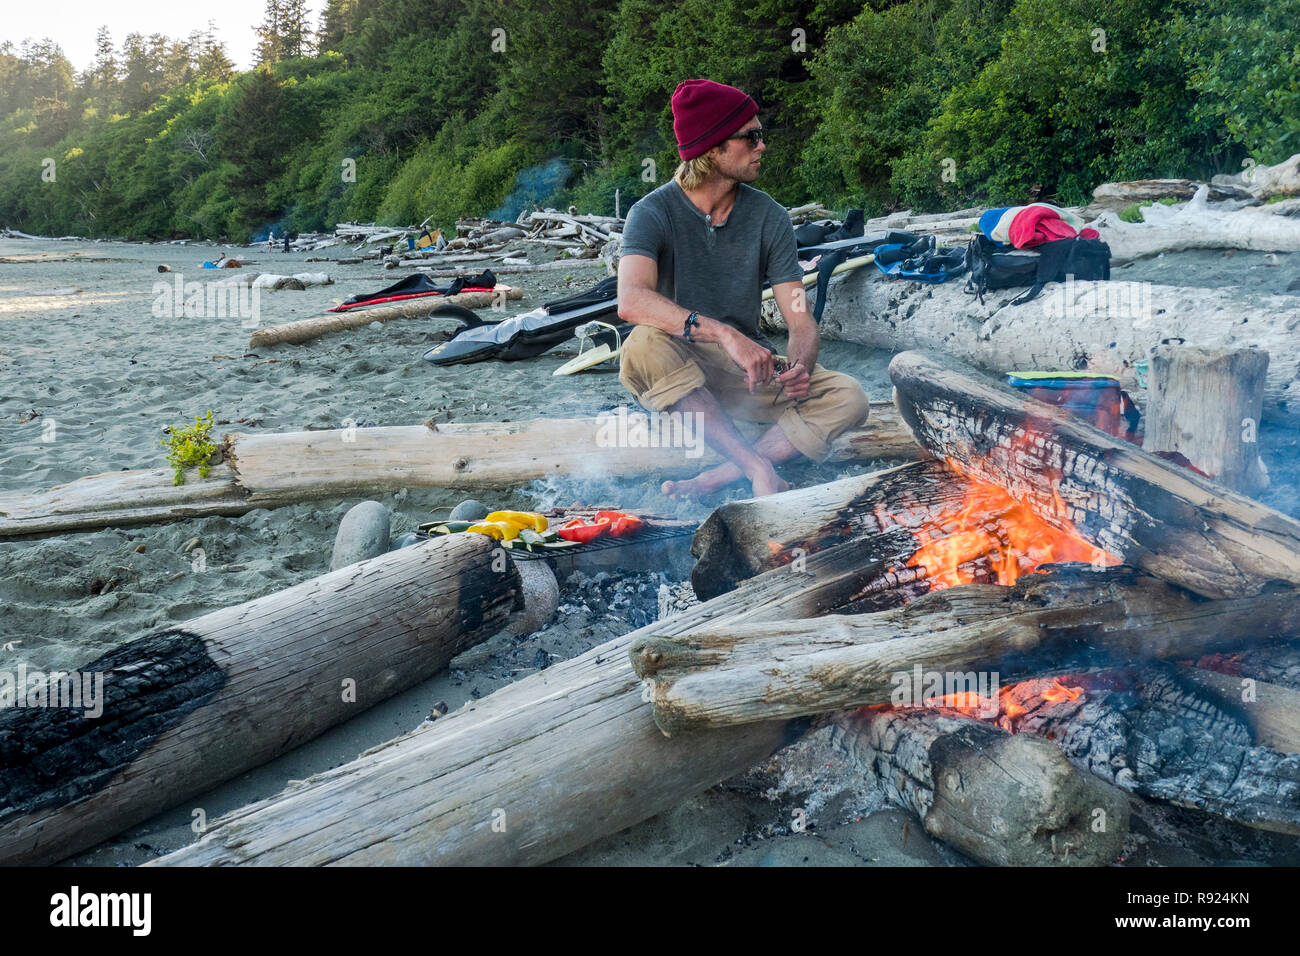 Sitzt ein Mann durch einen Brand und wartet ein Barbecue genießen nach einem Surf Session in Florencia Bay in Tofion, British Columbia, Kanada Stockfoto